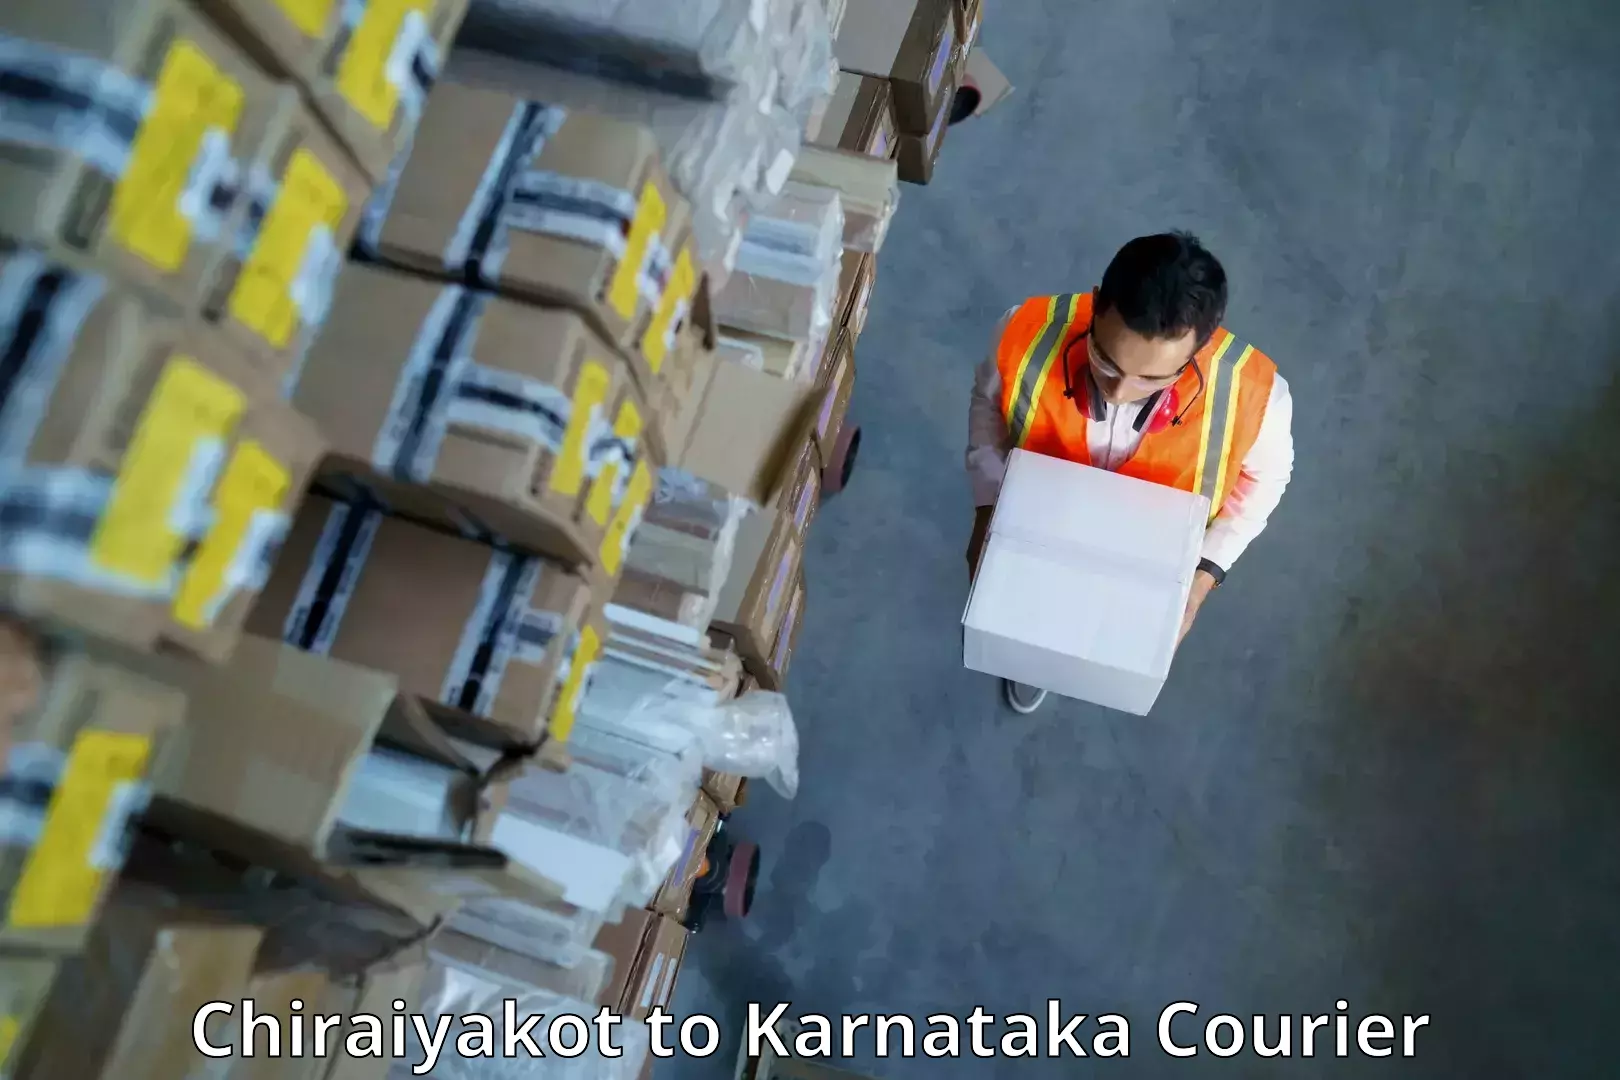 Courier insurance Chiraiyakot to Karnataka